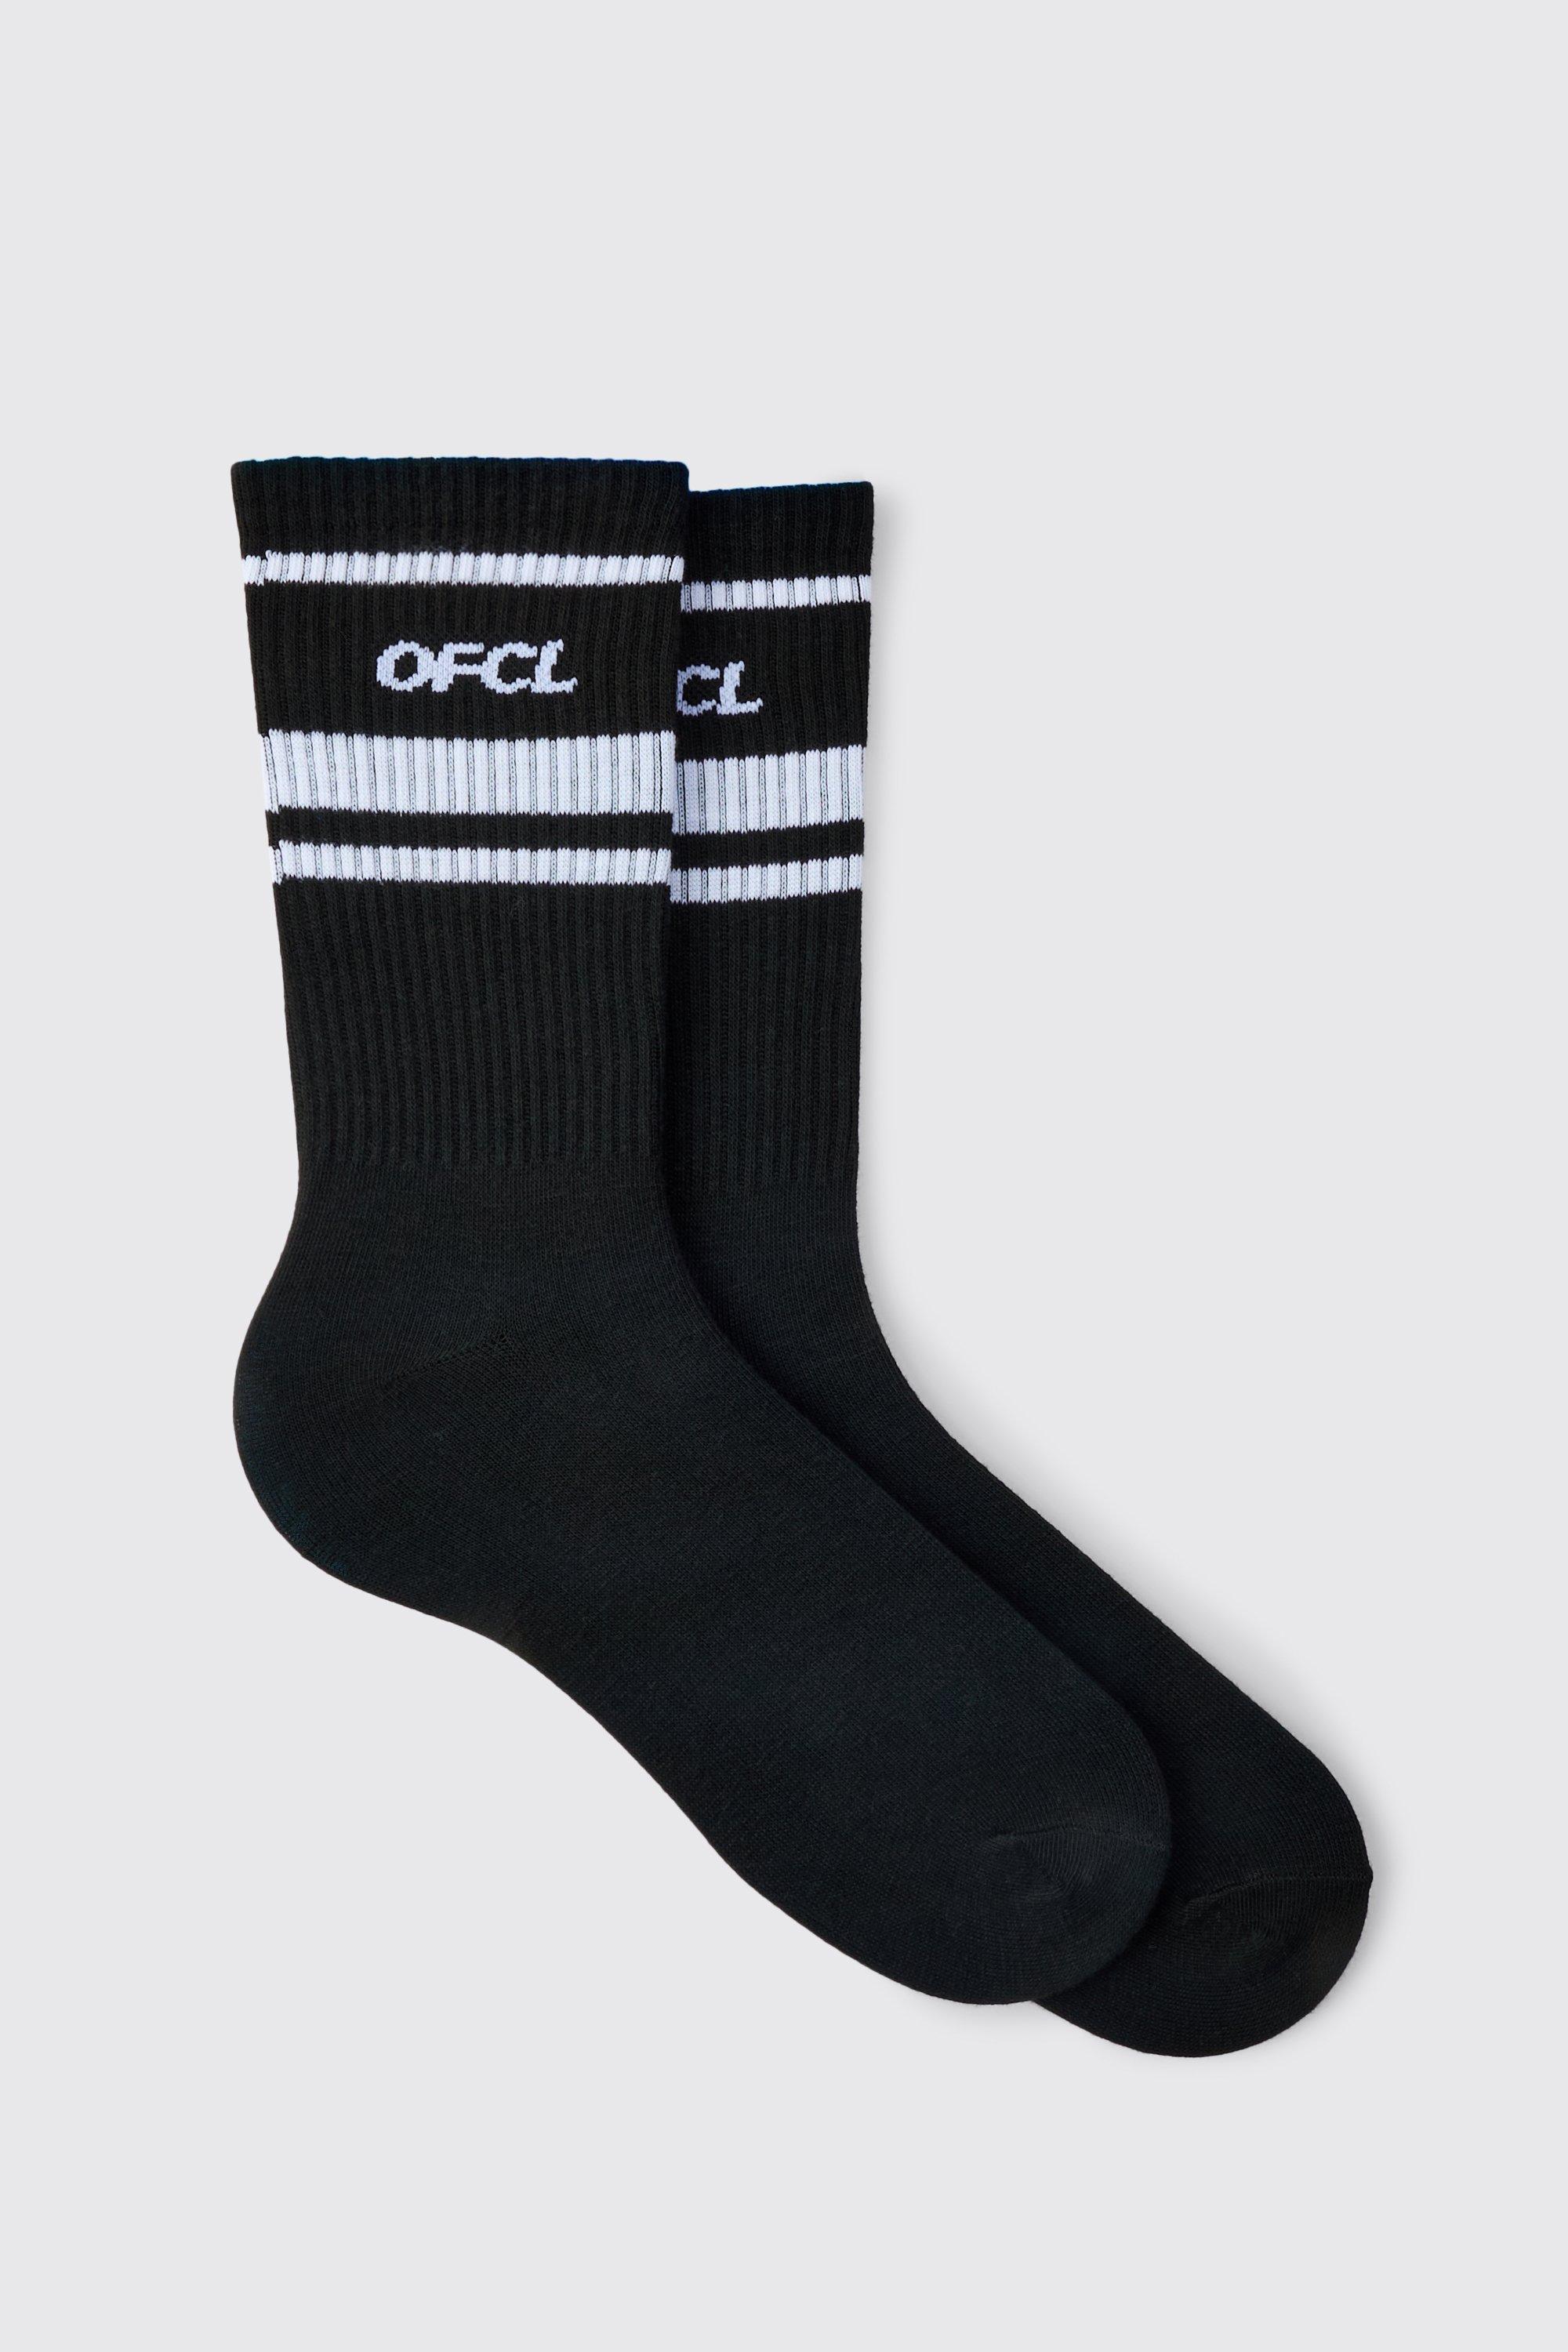 Mens Black Ofcl Sports Stripe Socks, Black